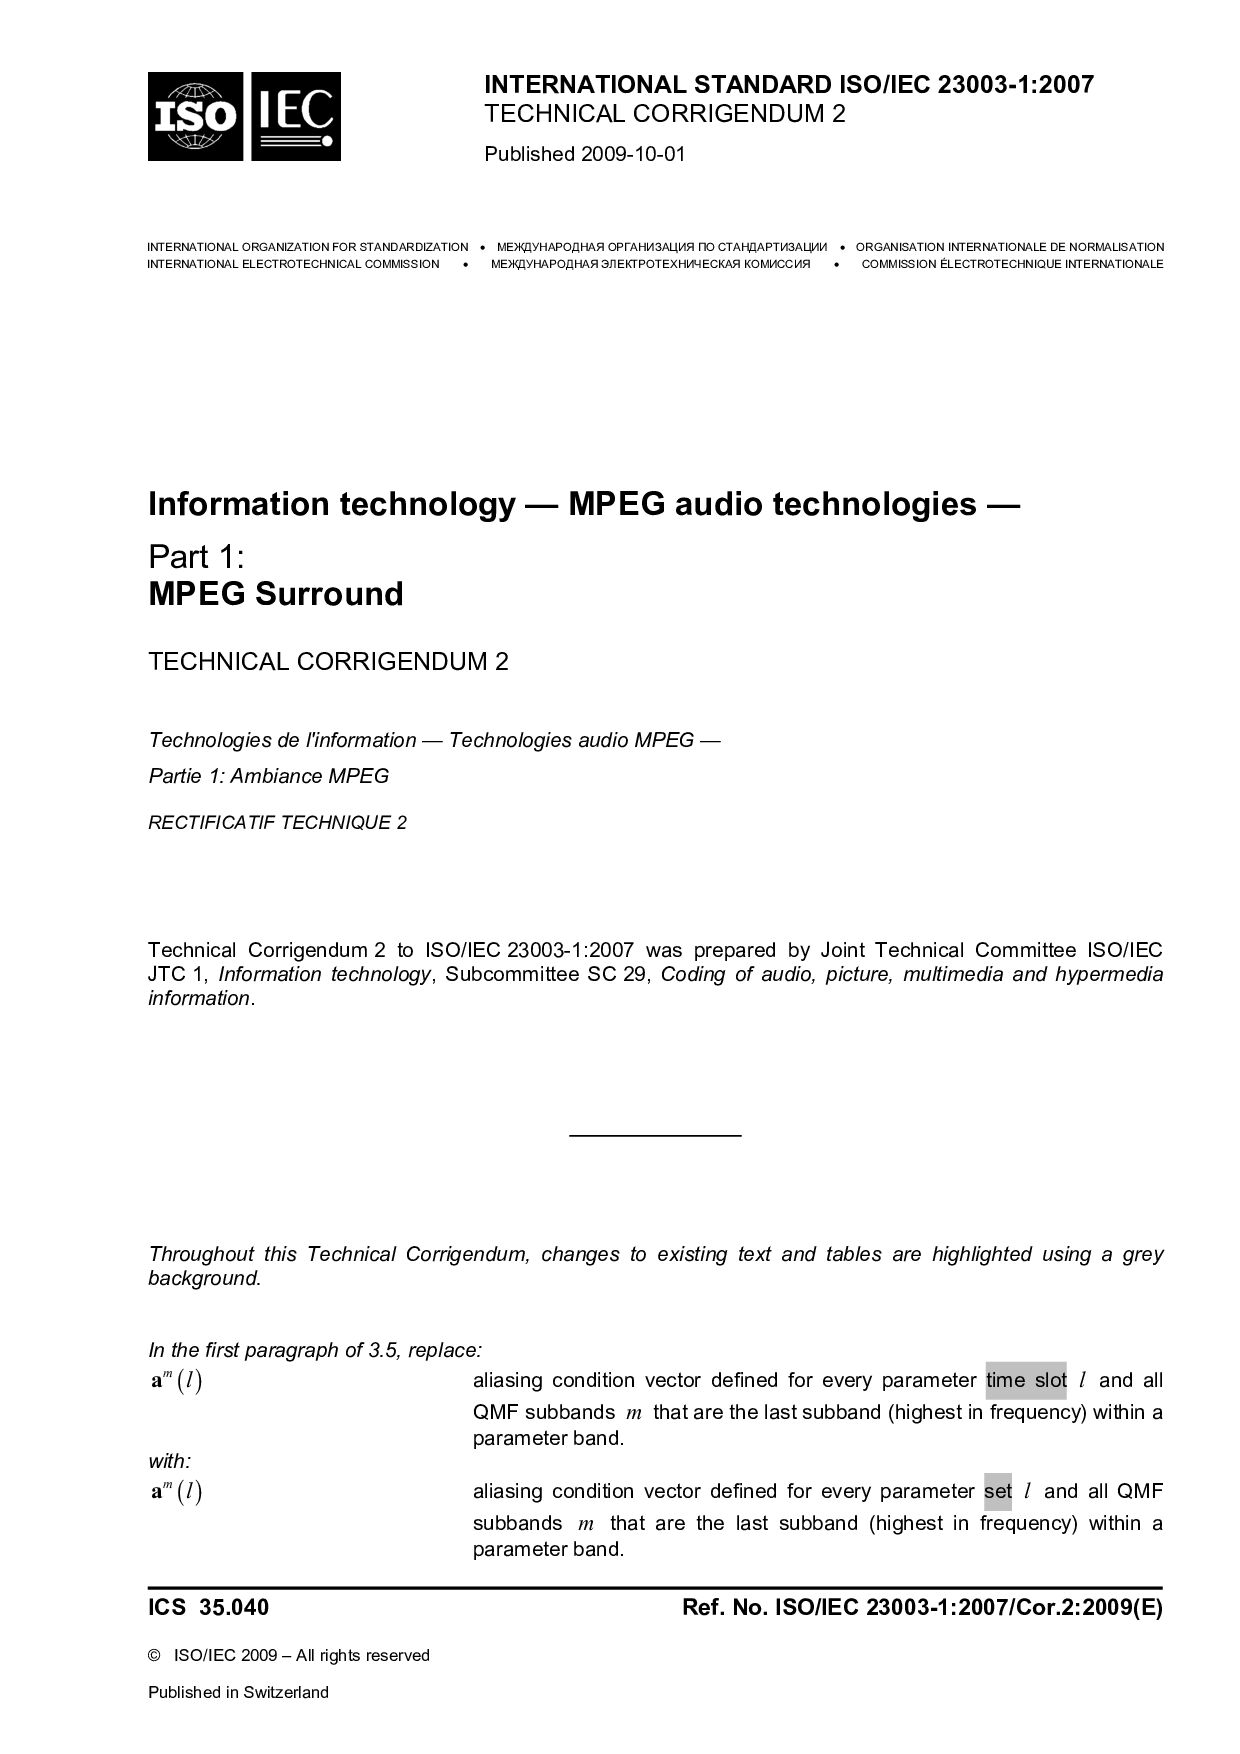 ISO/IEC 23003-1:2007/Cor 2:2009封面图